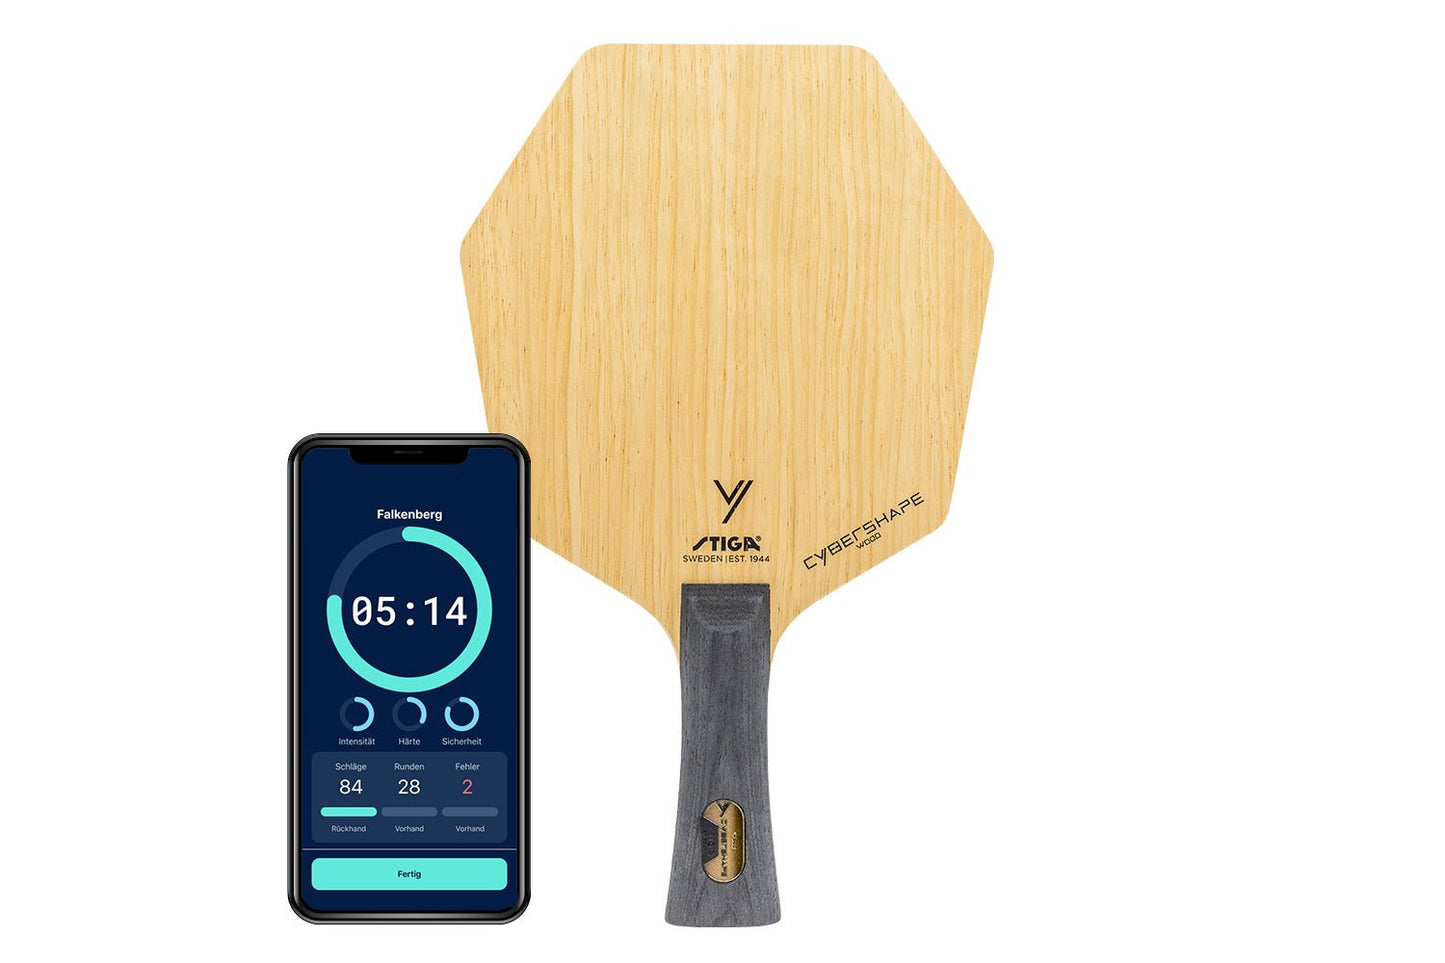 Stiga Cybershape Wood Tischtennisschläger mit konkaven Griff und Smartphone zeigt Daten des Schlägers vor weißem Hintergrund